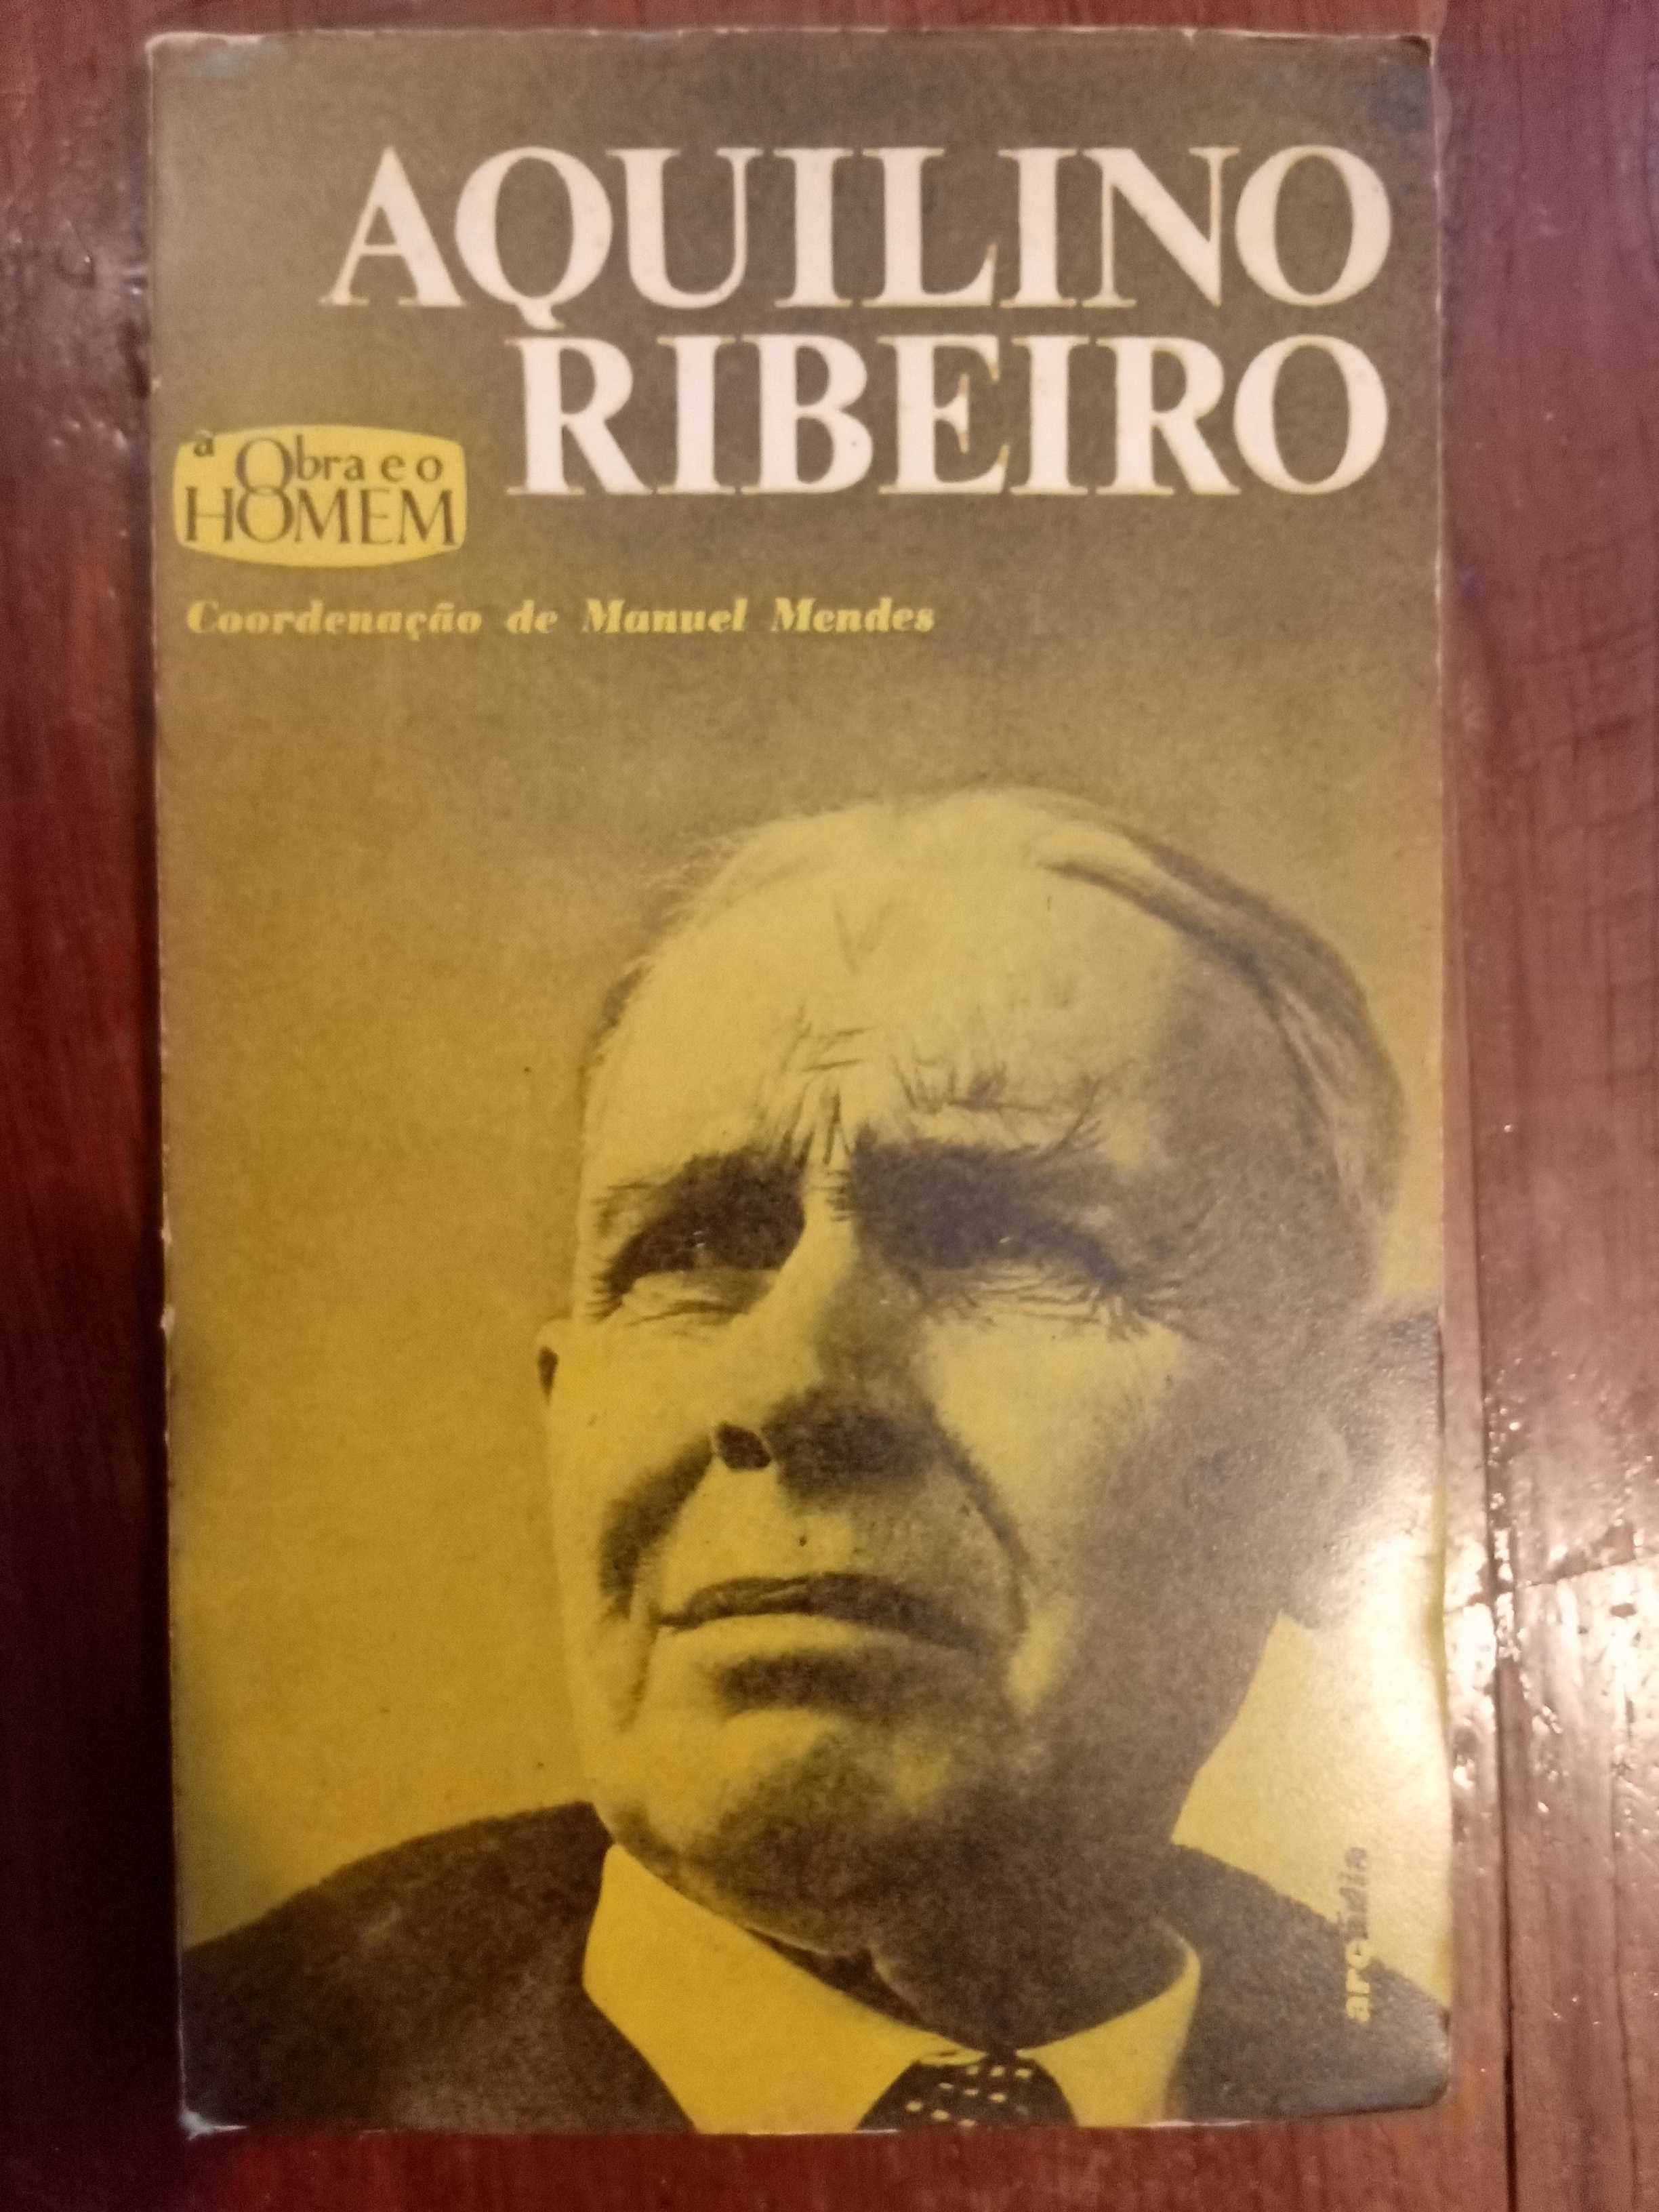 Manuel Mendes (coord.) - Aquilino Ribeiro